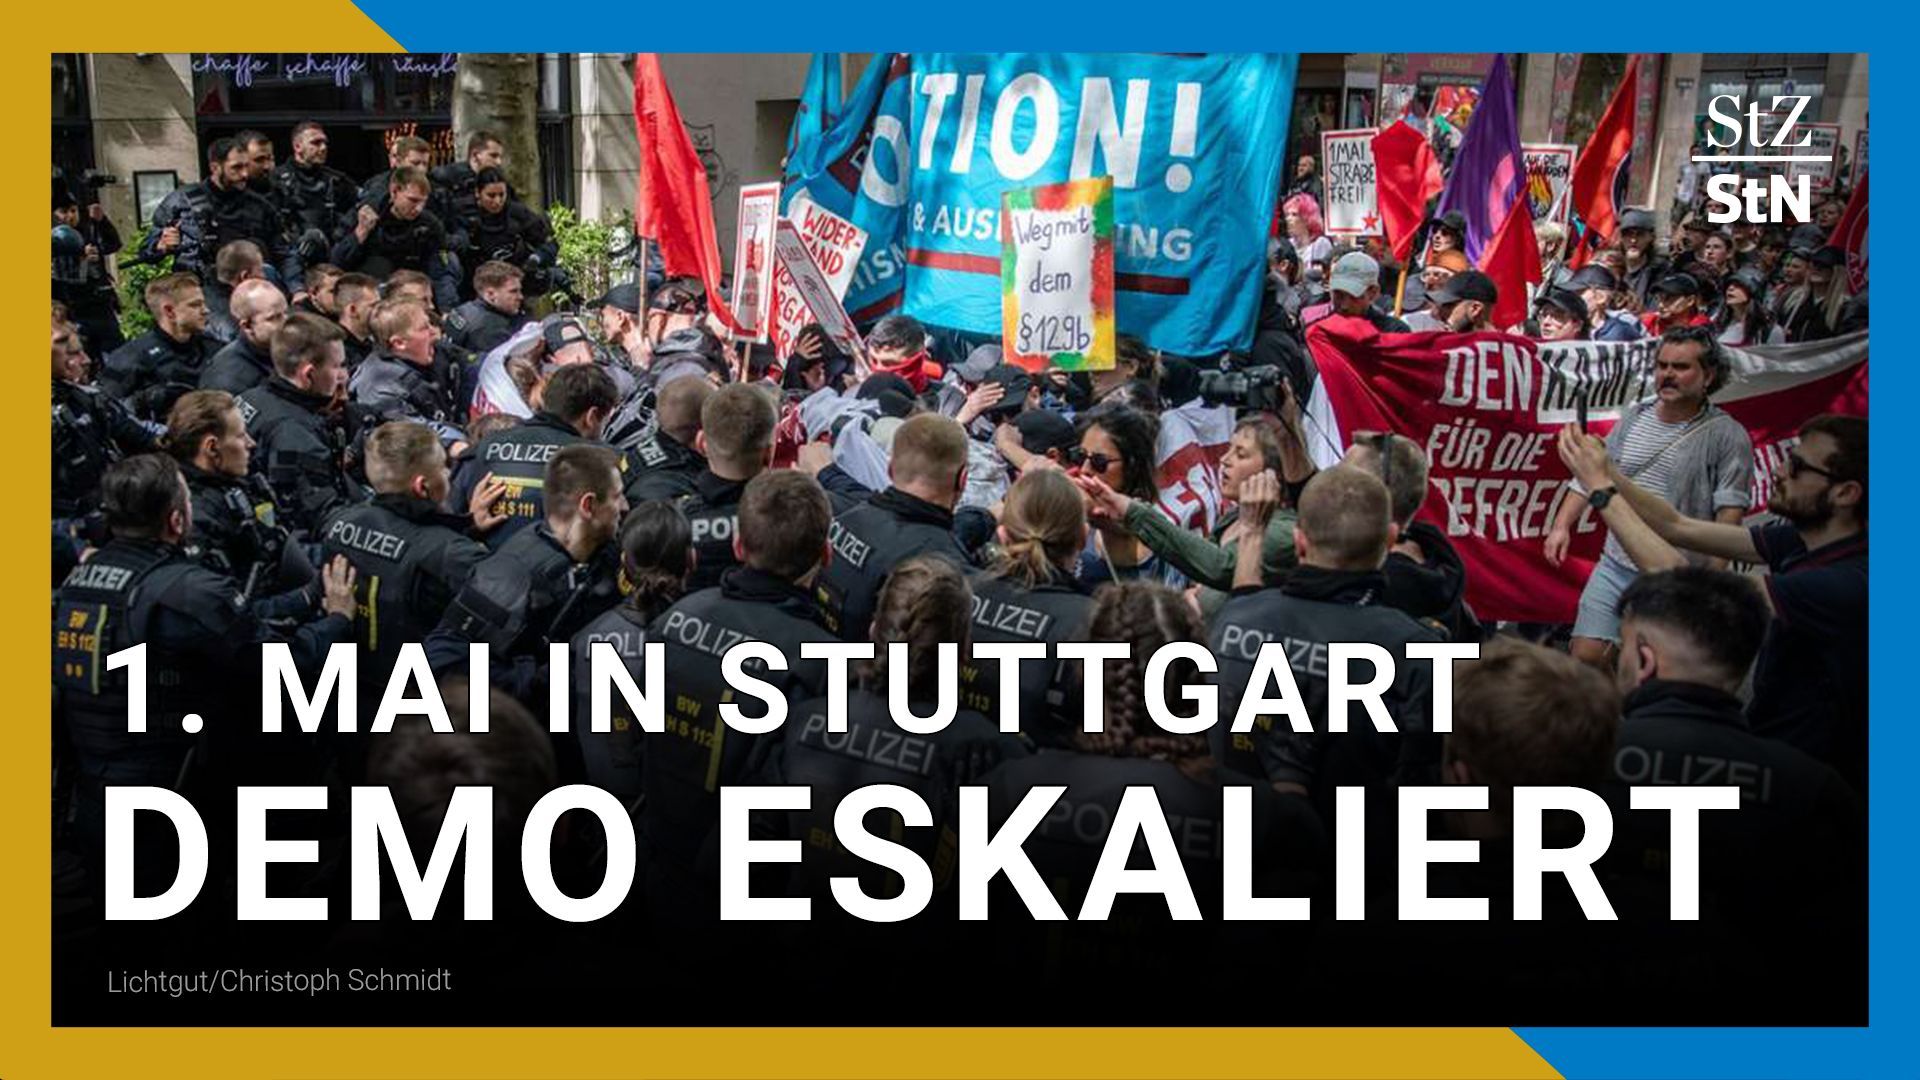 Verletzte und Verhaftungen nach Gewaltausbruch bei 1. Mai Demo in Stuttgart